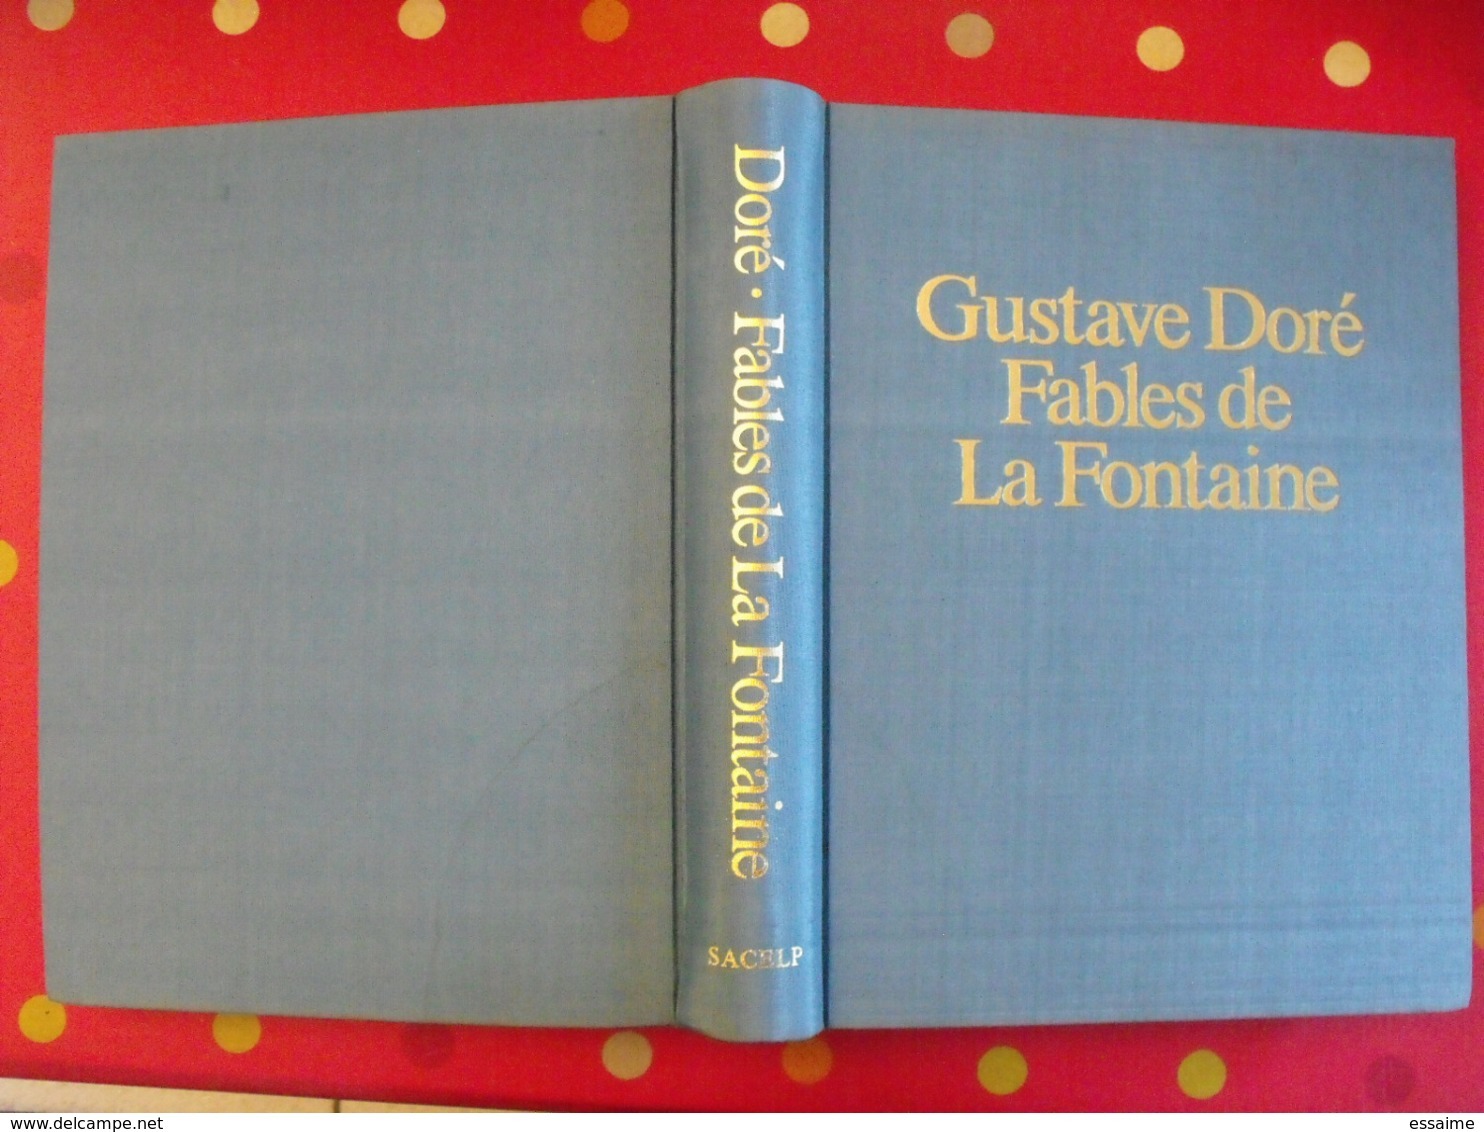 gustave Doré. Fables de La Fontaine. 320 illustrations. sacelp 1980